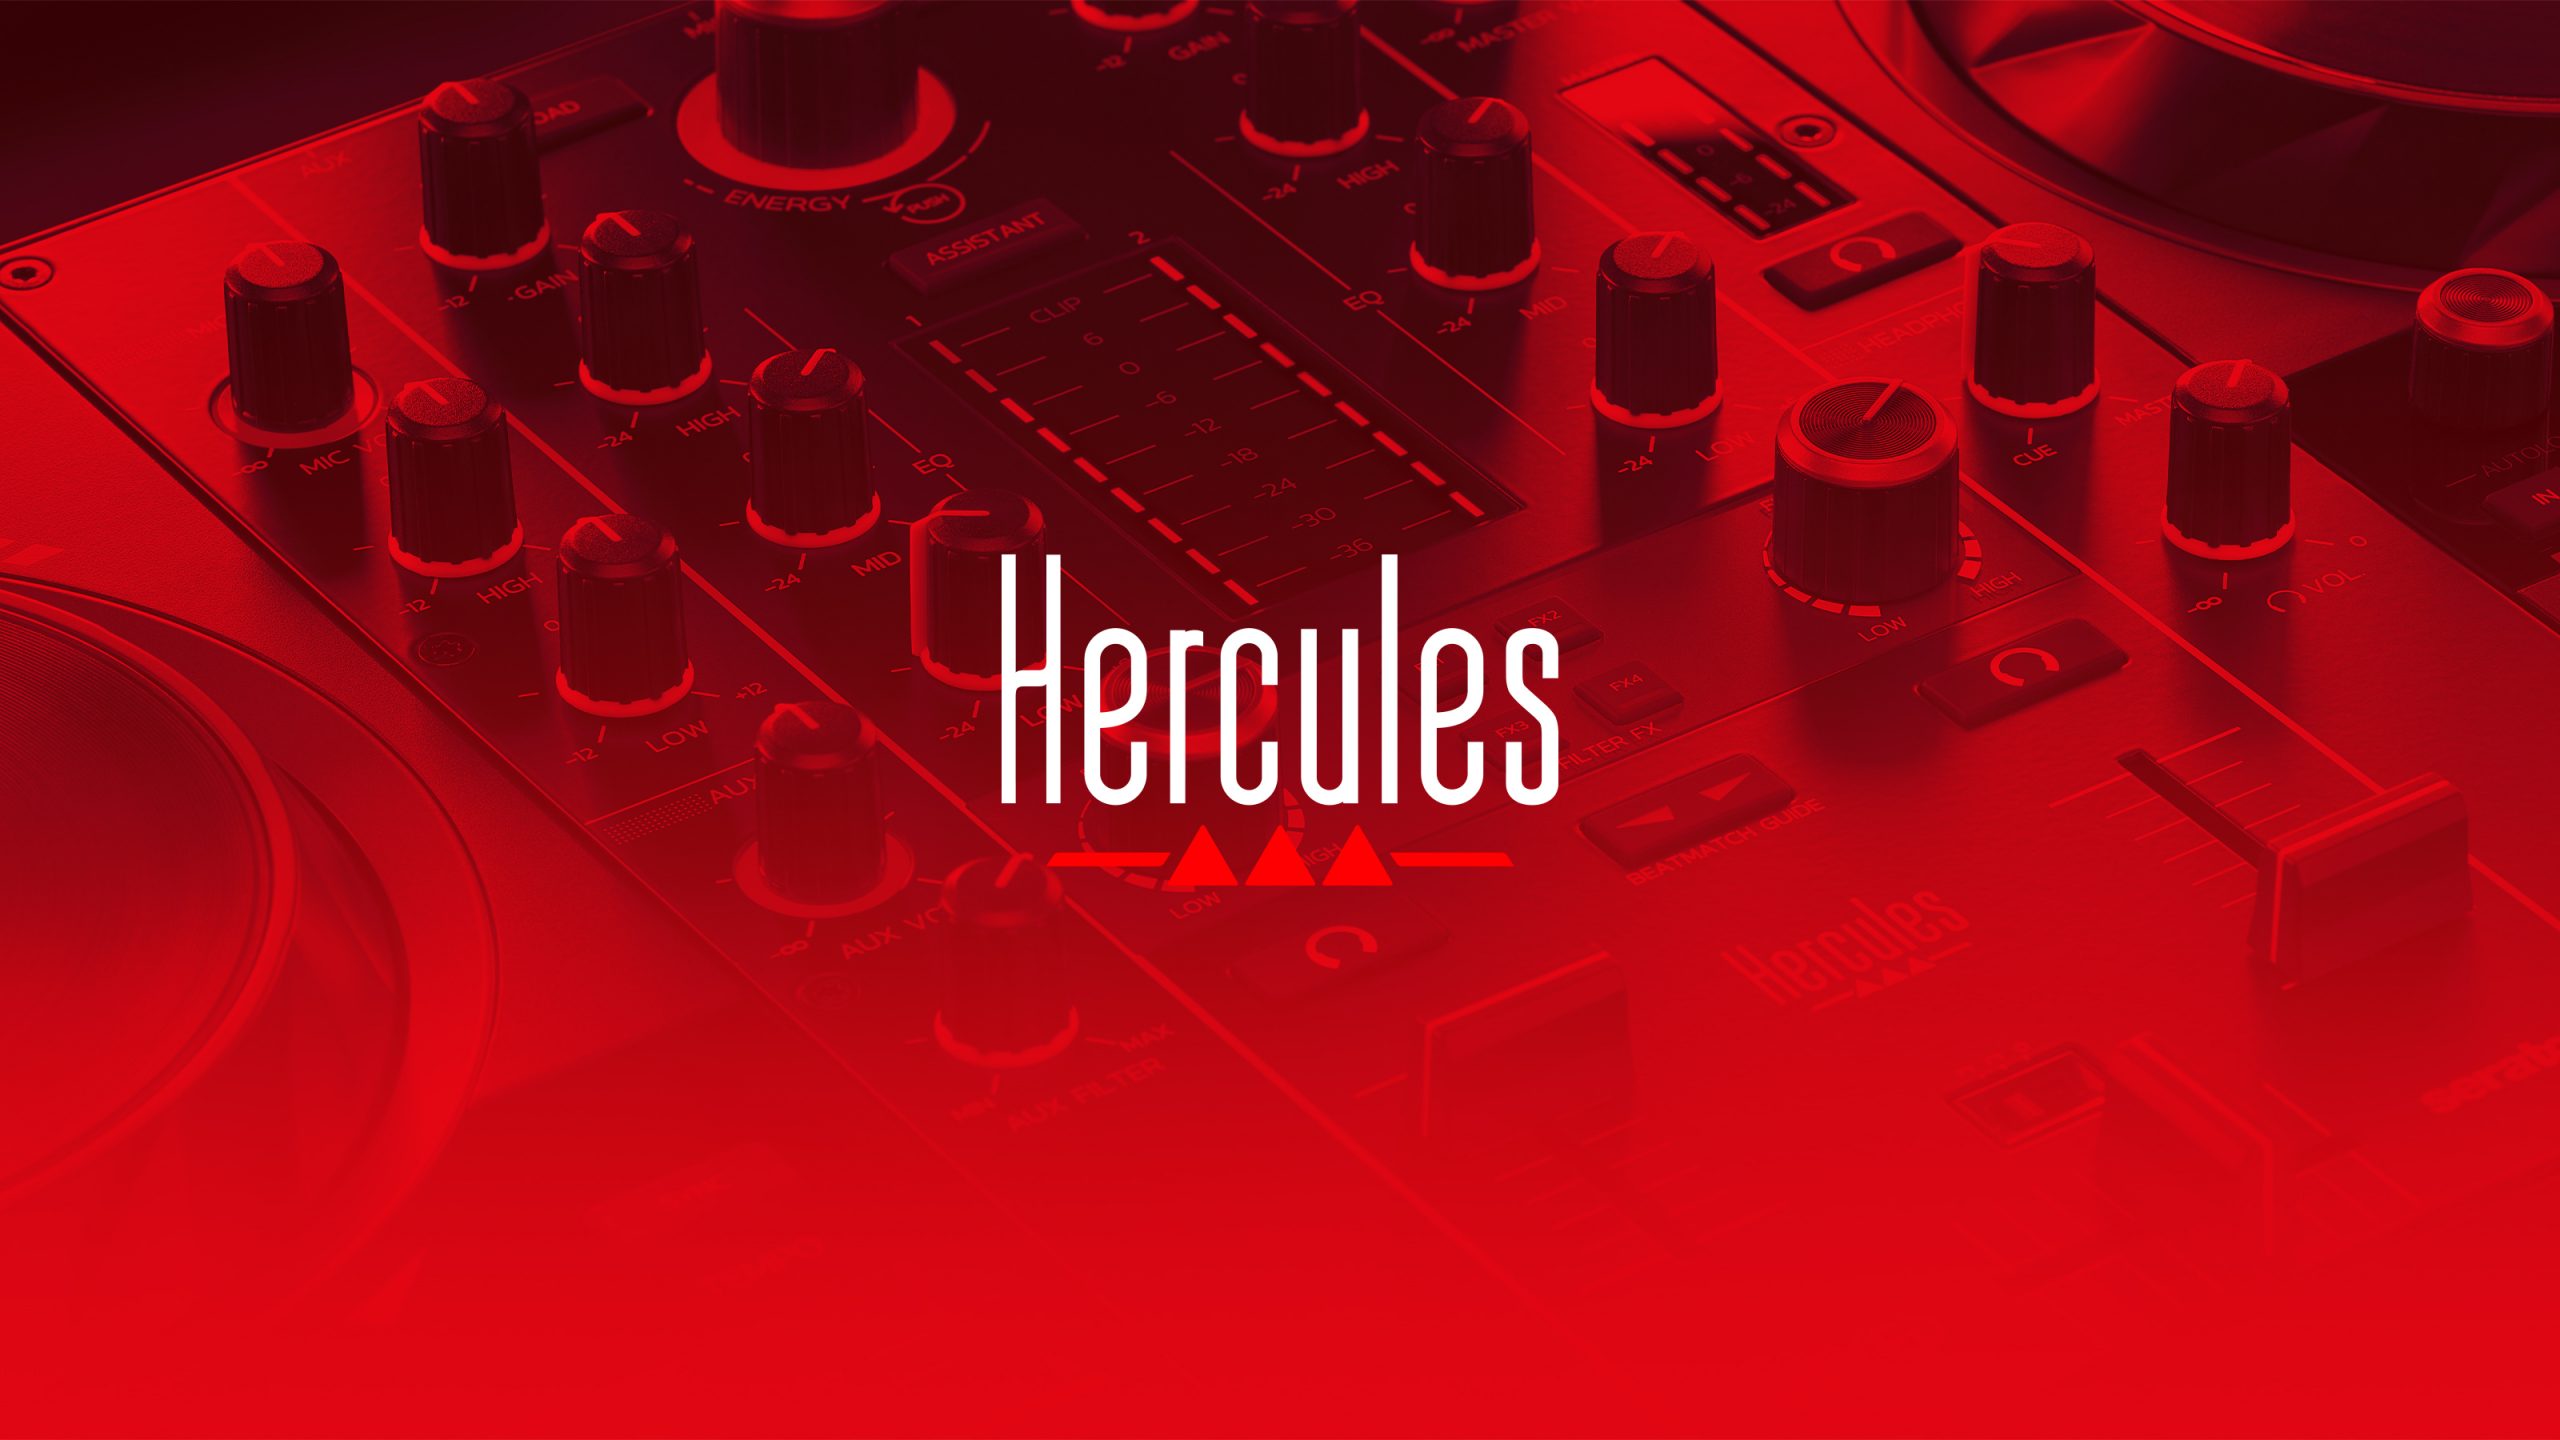 (c) Hercules.com